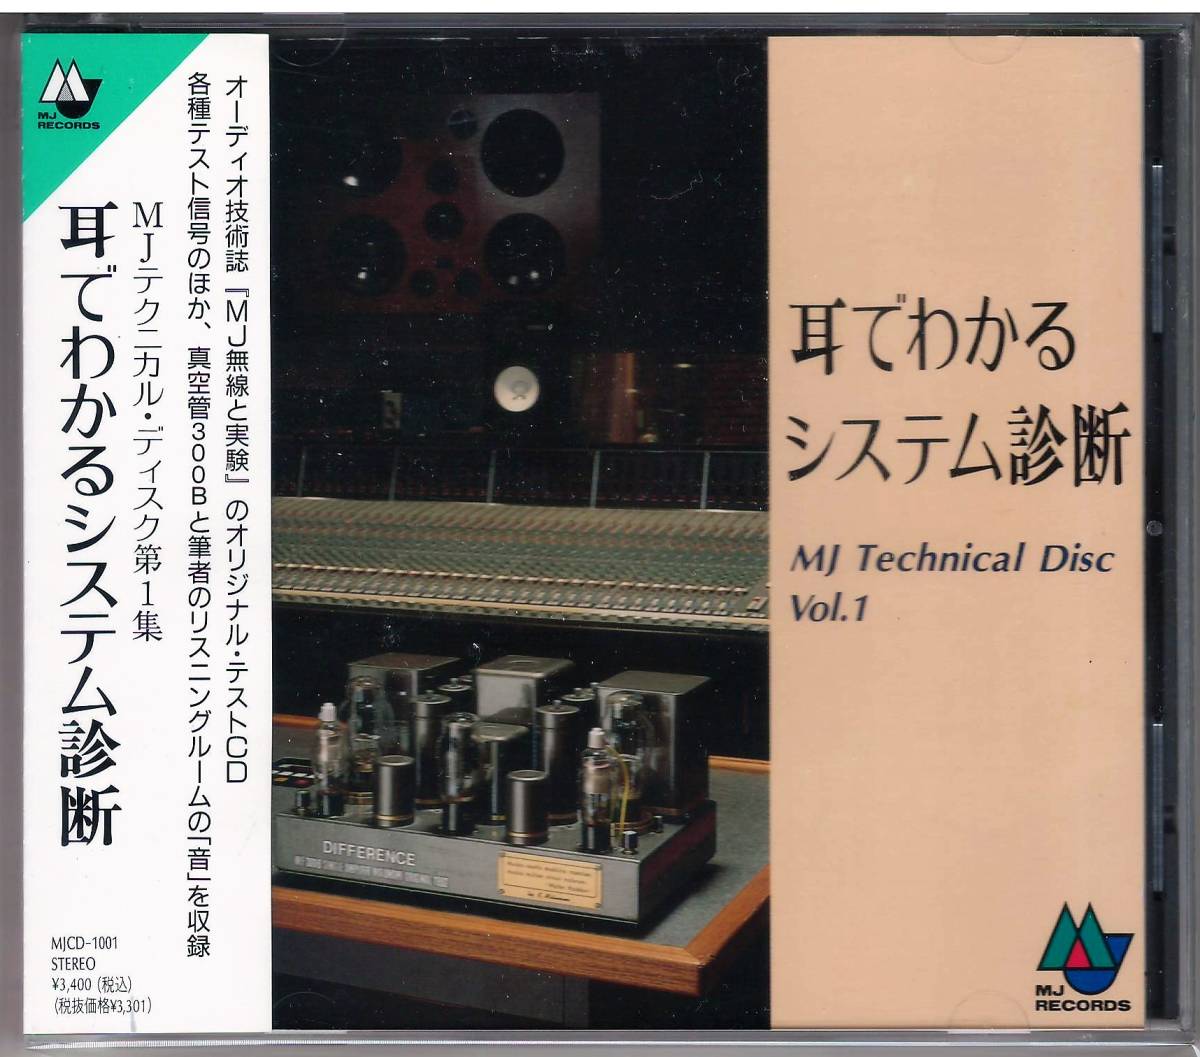 「耳でわかるシステム診断」CD 送料込 MJテクニカル・ディスク第1集 MJ無線と実験_画像1